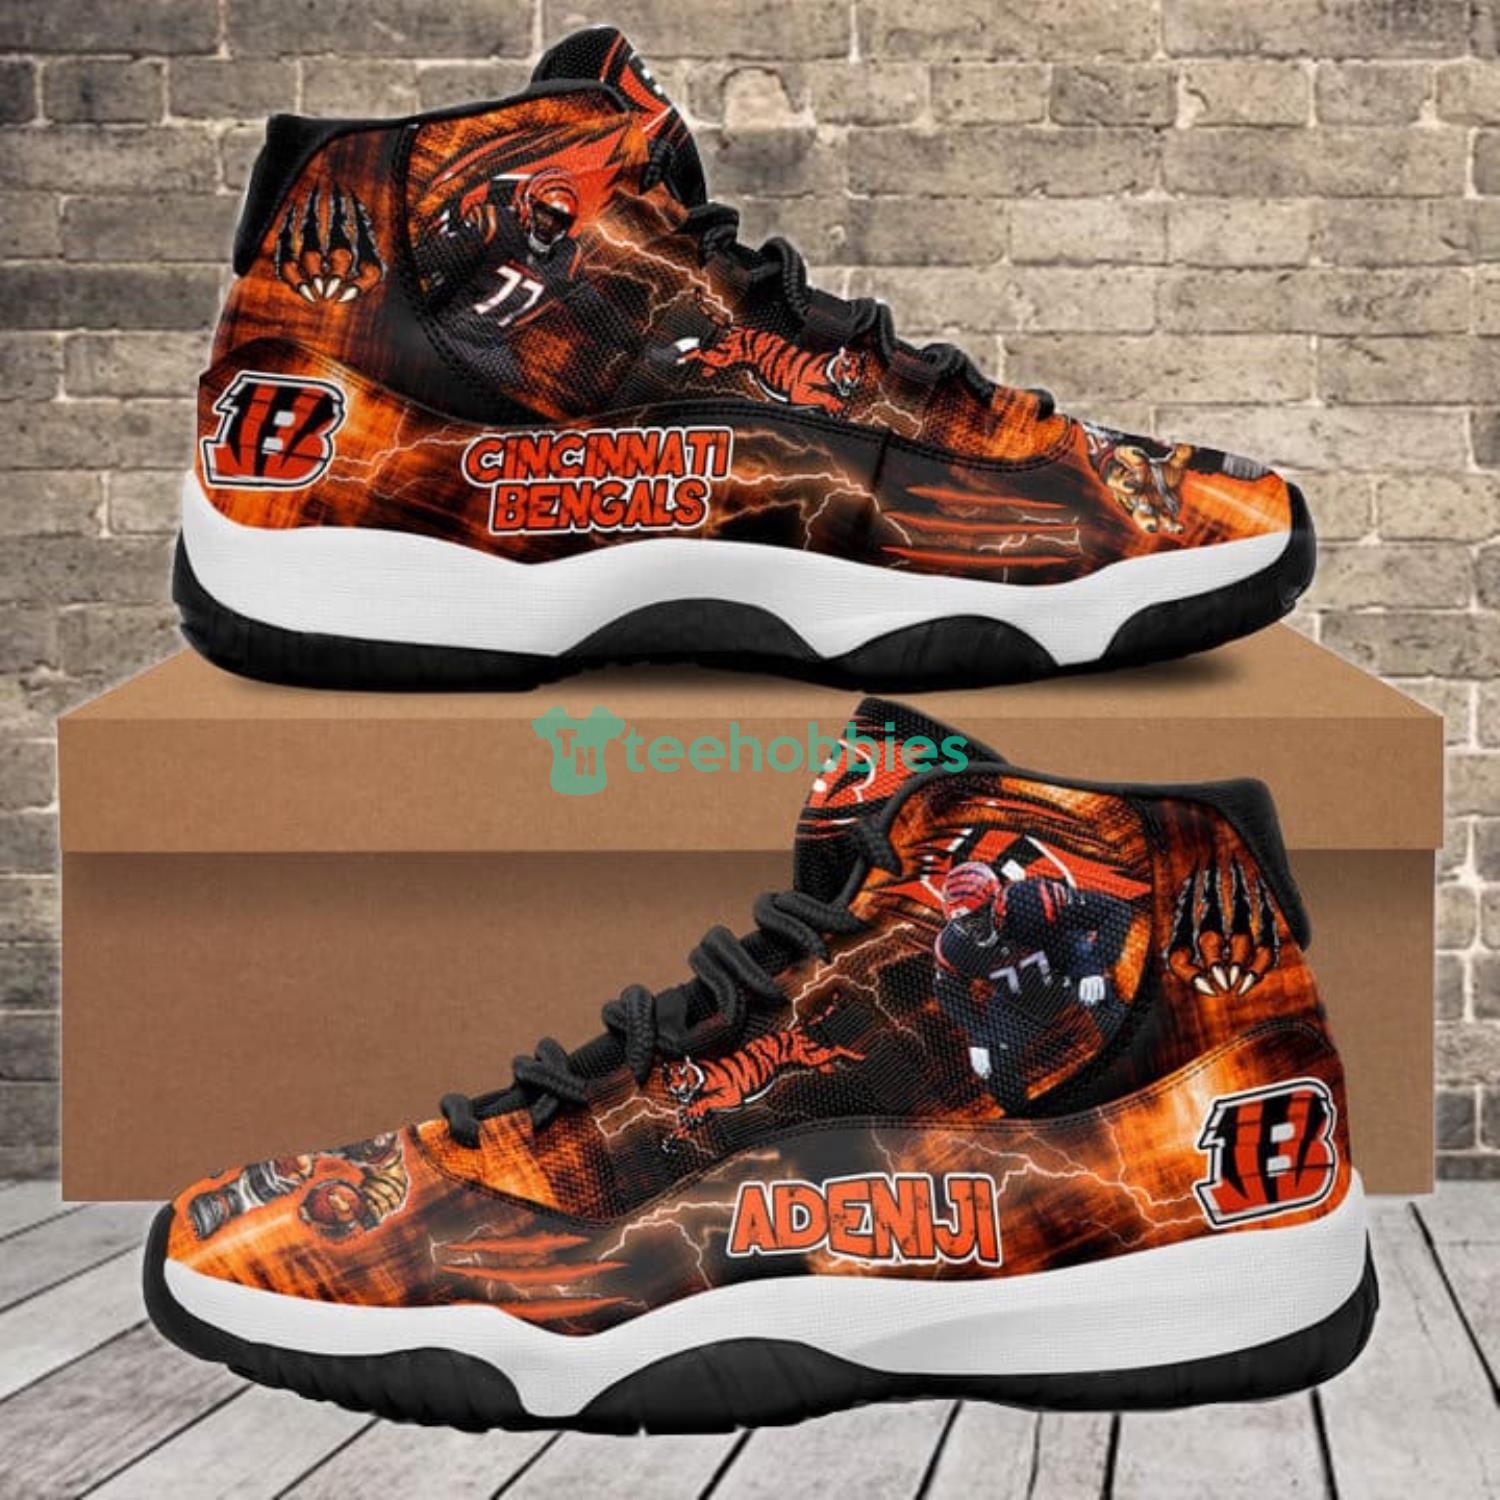 Cincinnati Bengals Hakeem Adeniji Air Jordan 11 Shoes Sneaker For Fans Product Photo 1